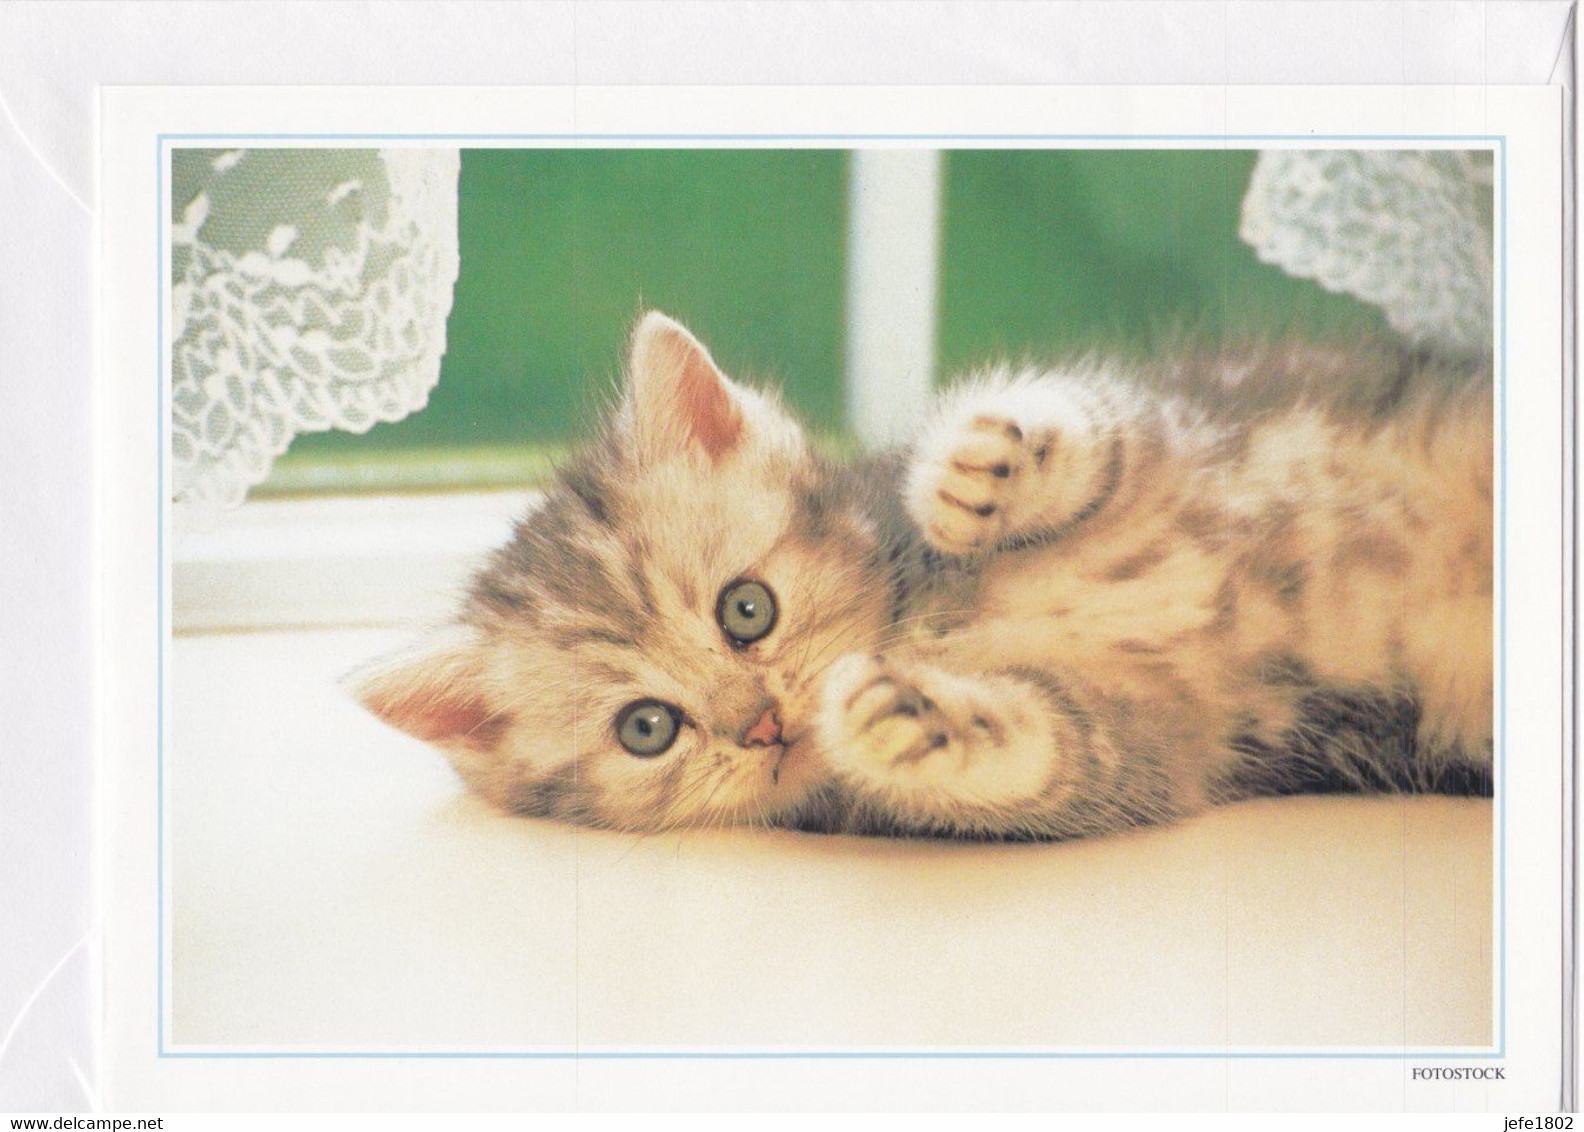 Postogram 087 / 95 - Poes - Fotostock - Kitten - Little Cat - Postogram